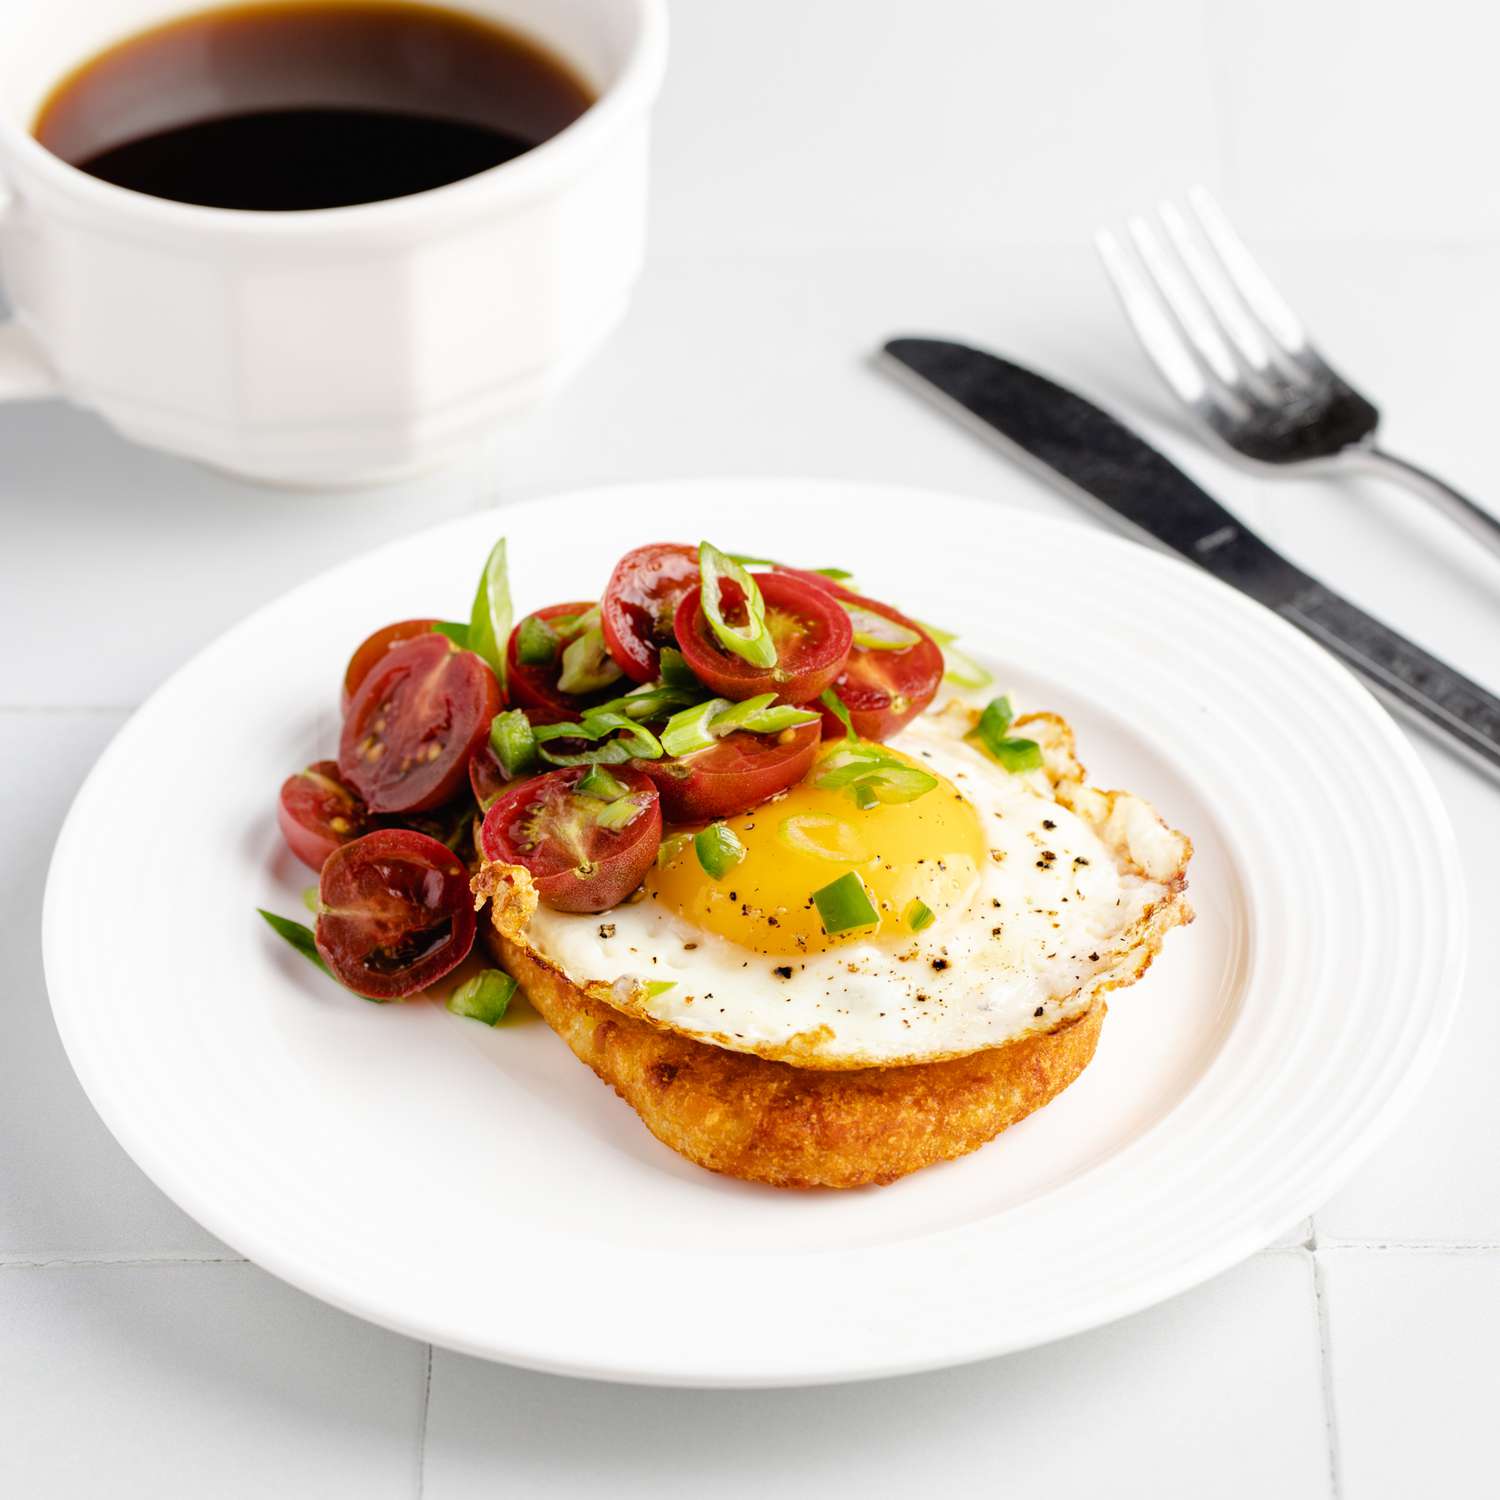 Foto de receta de tostada de pastrami marrón para desayuno con huevos y salsa